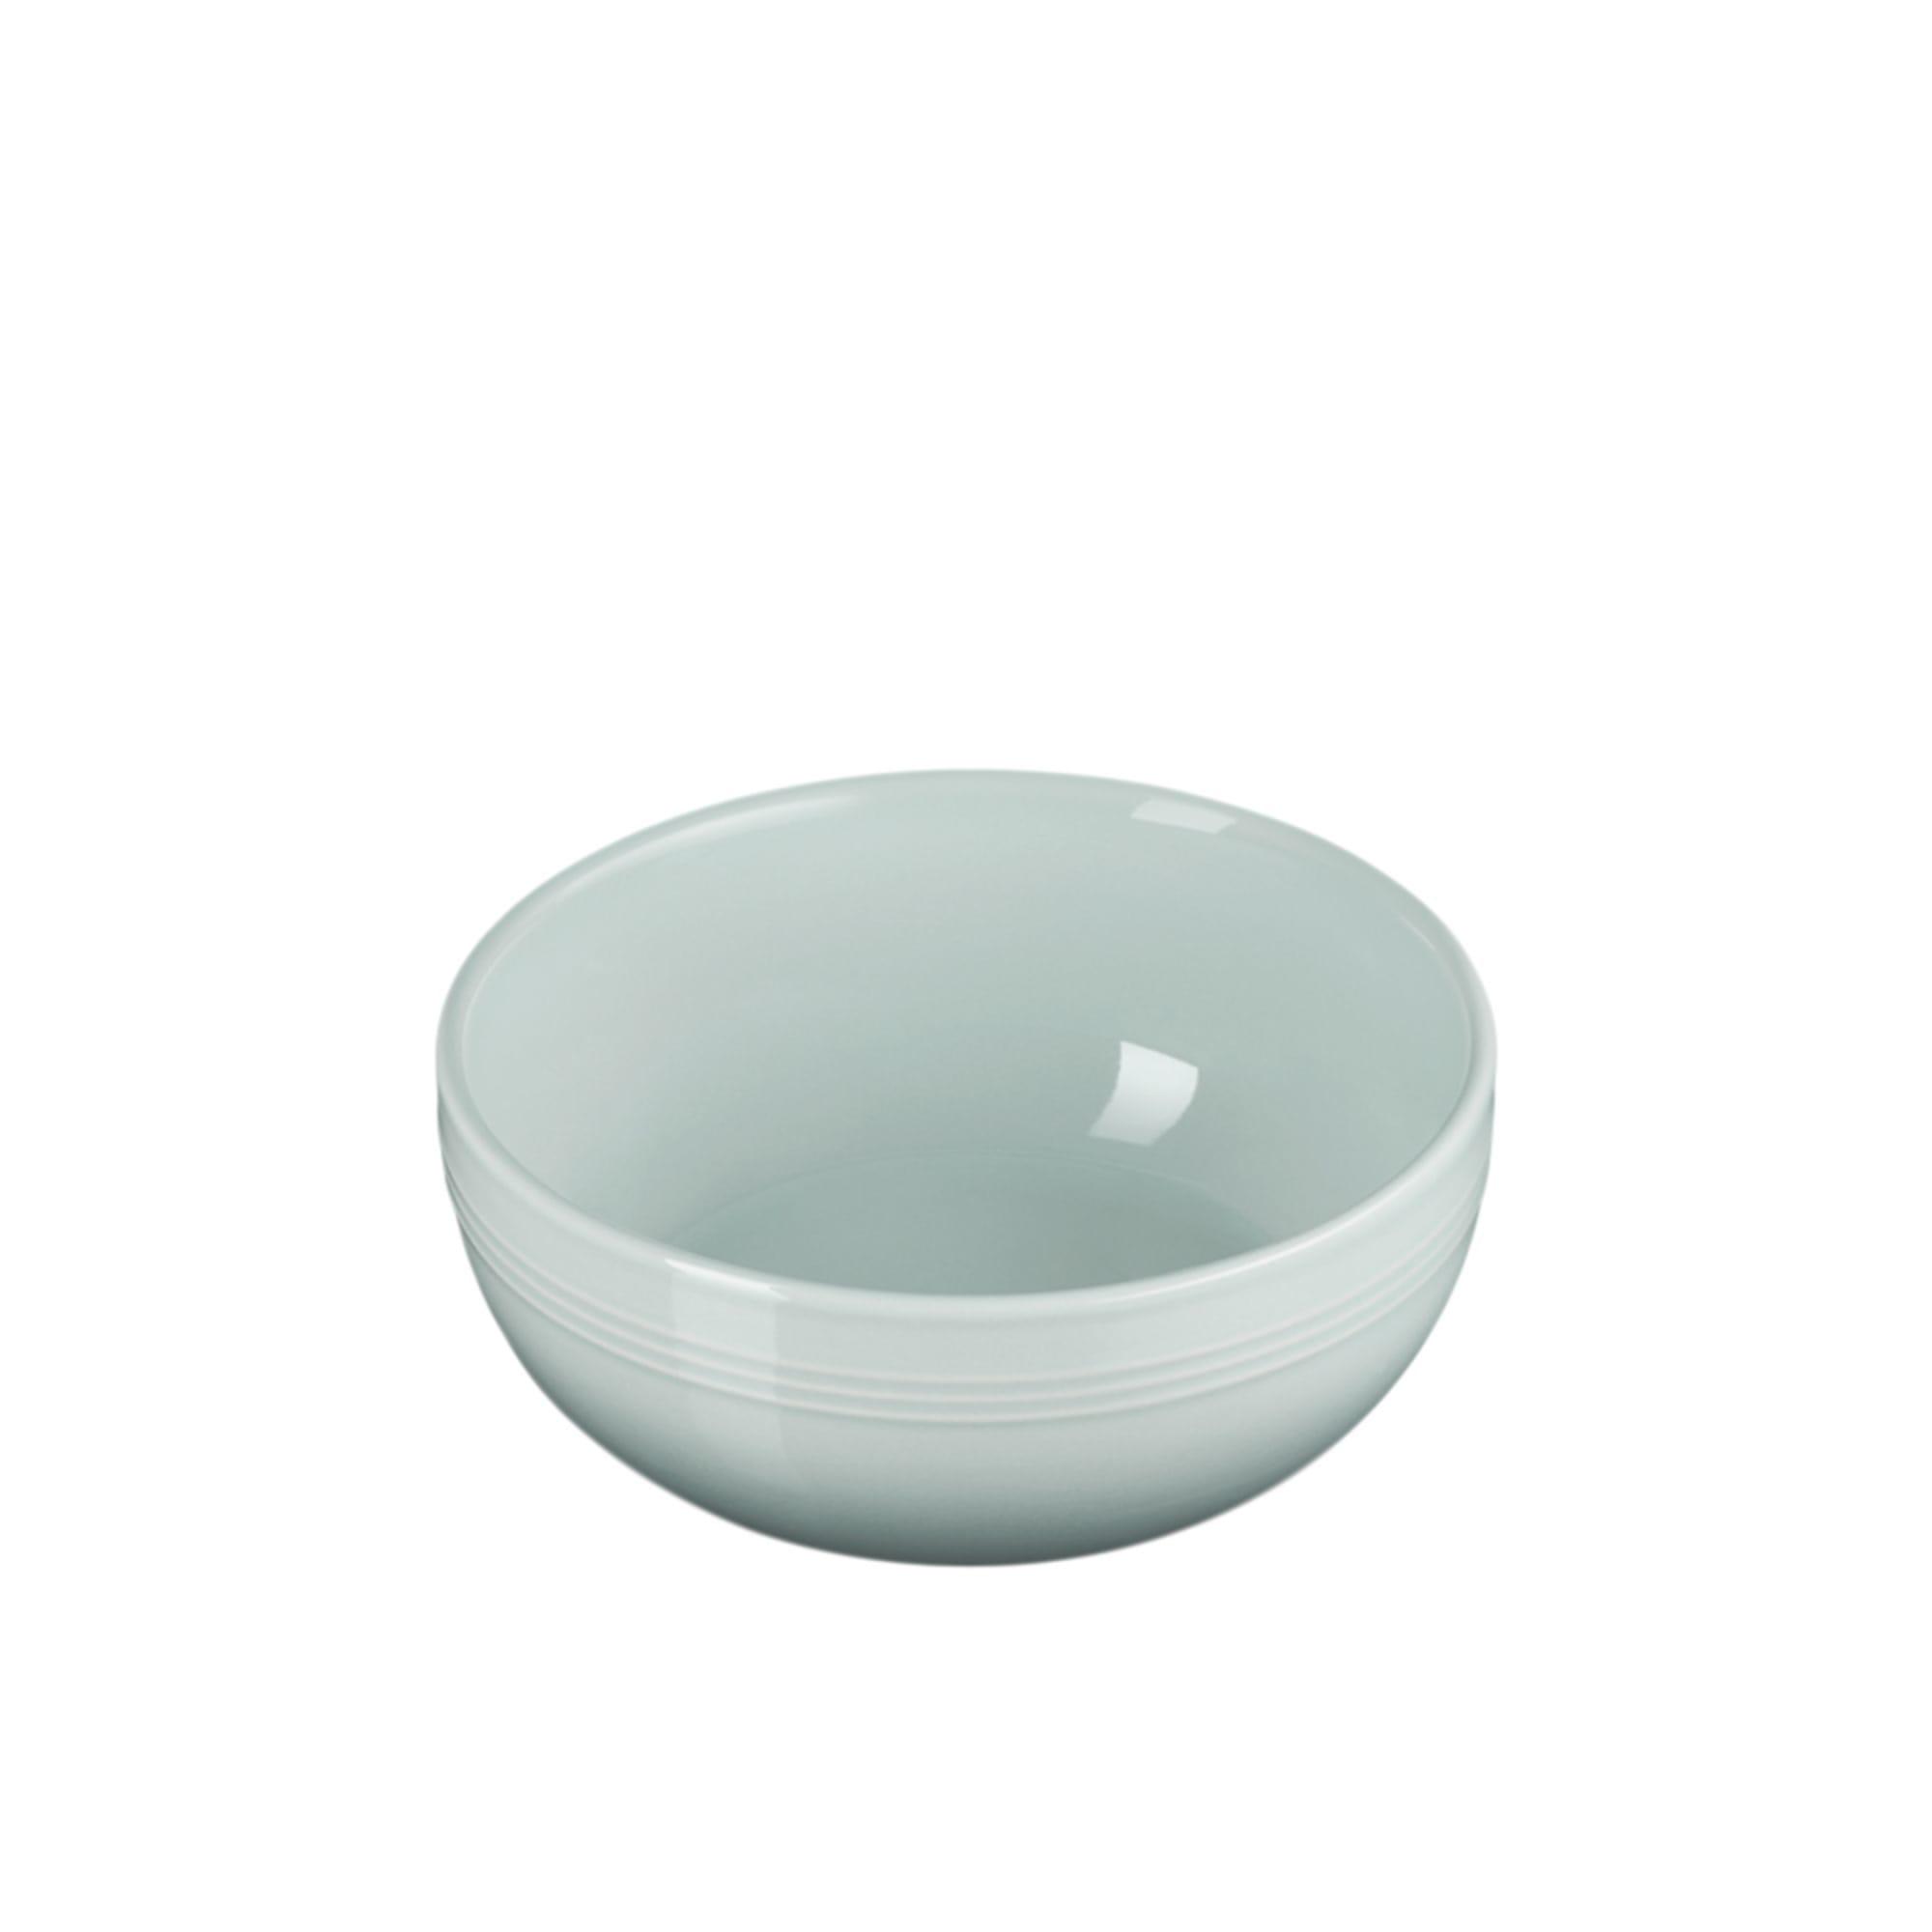 Le Creuset Stoneware Coupe Cereal Bowl 16cm Sea Salt Image 8